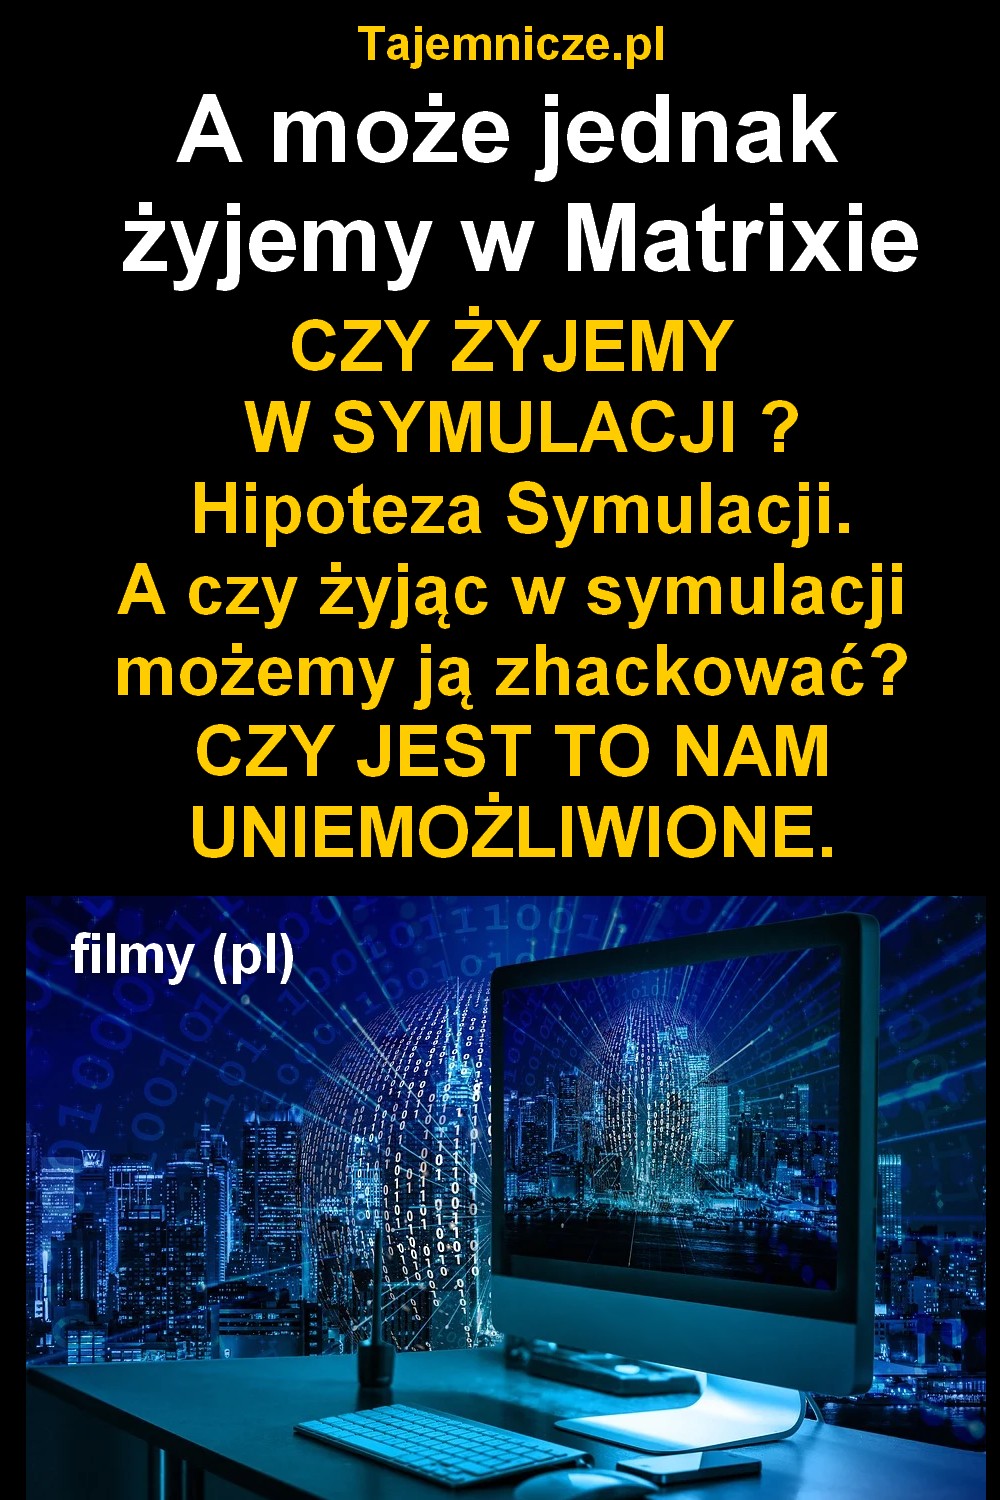 tajemnicze.pl--matrix-hipoteza-symulacji-filmy-pl